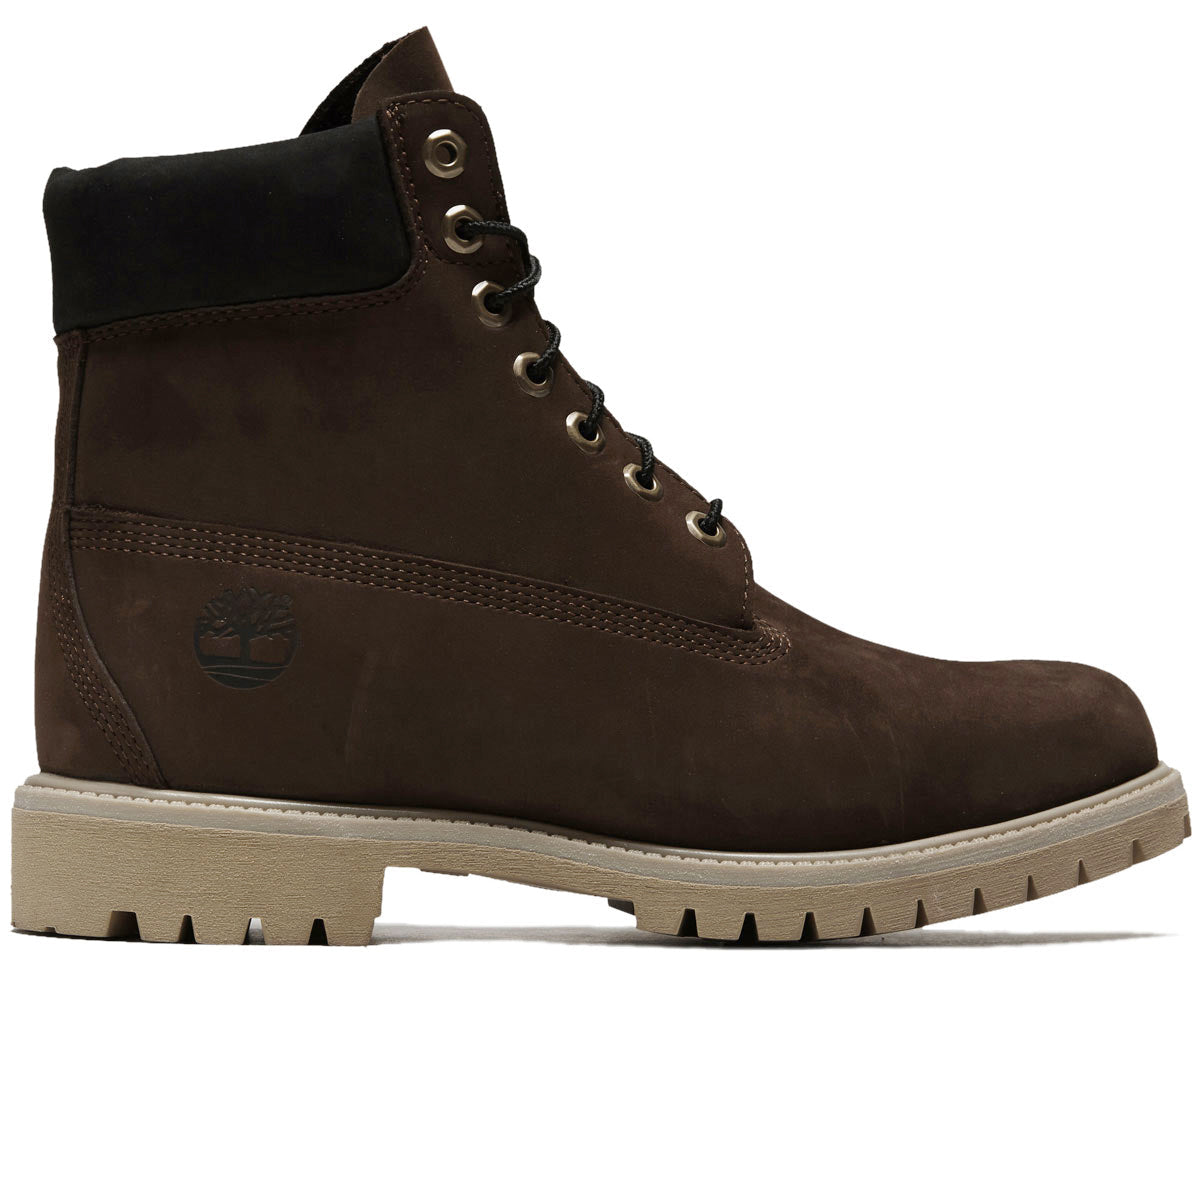 Timberland 6 Inch Premium Boots - Dark Brown Nubuck image 1